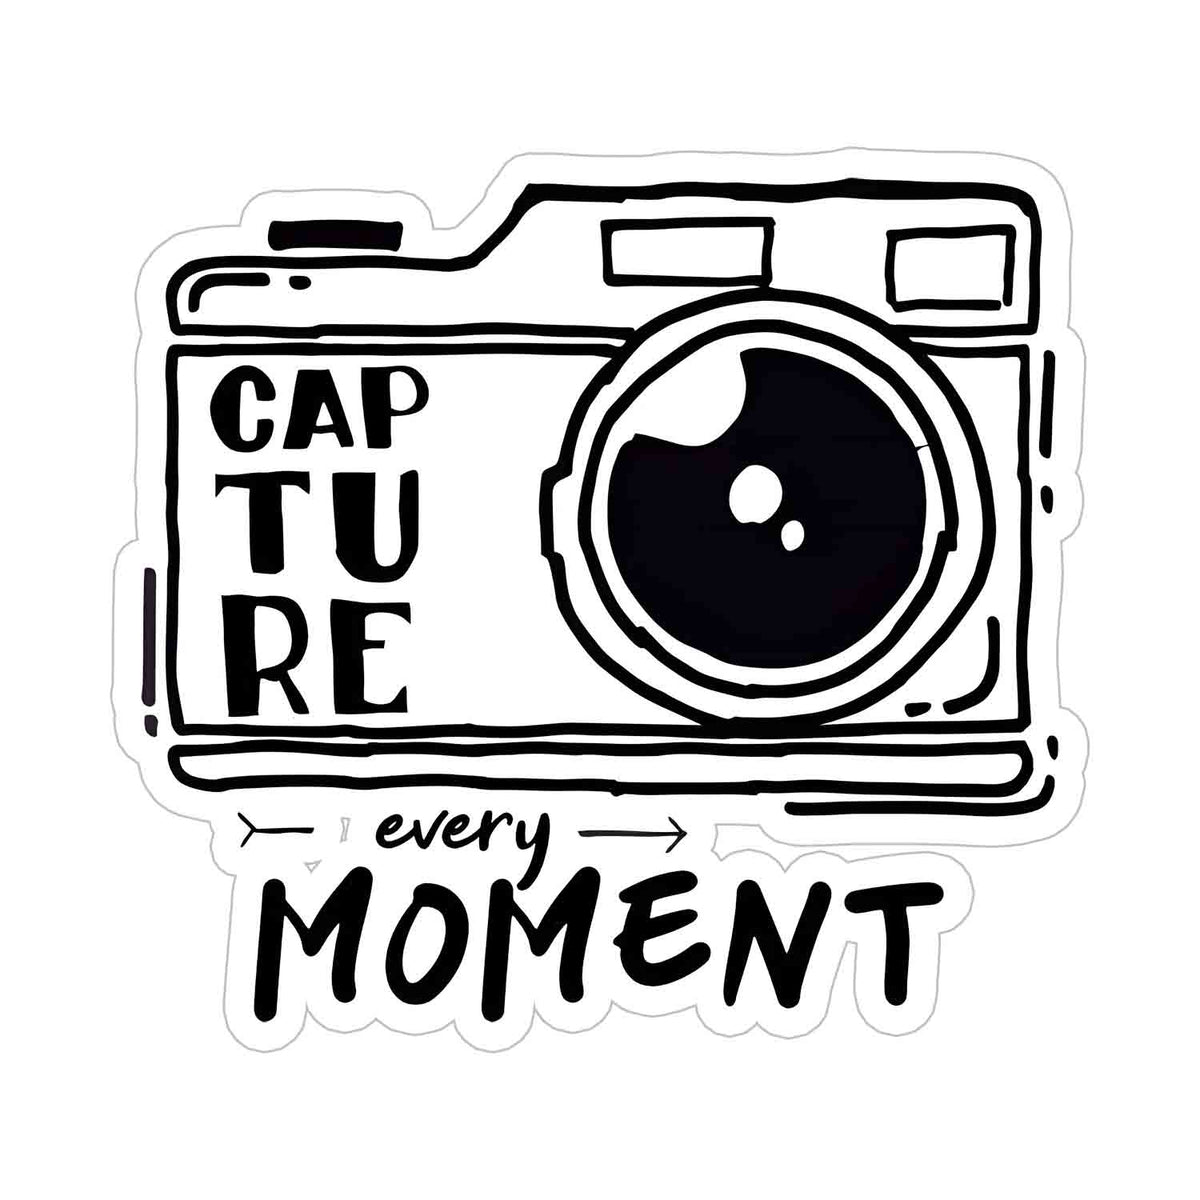 Capture Each Moment Sticker